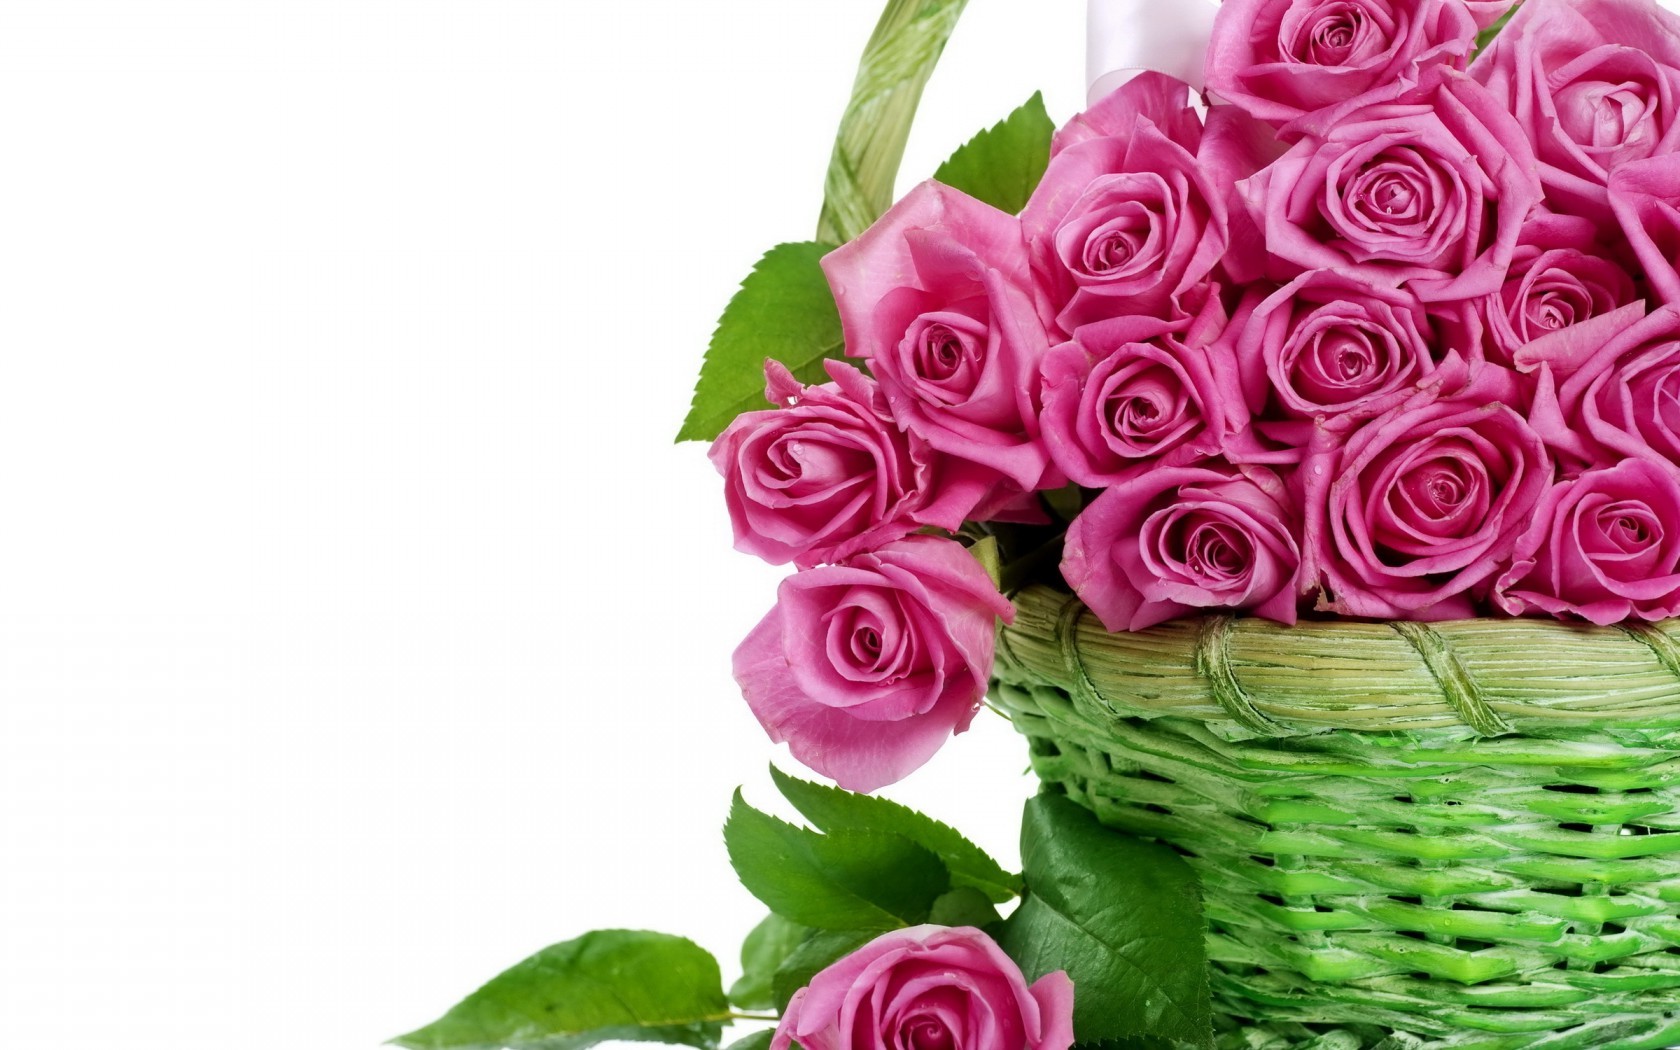  Цветы цветы, красивые, розовые, букет, корзина, корзинка картинка, обои рабочий стол